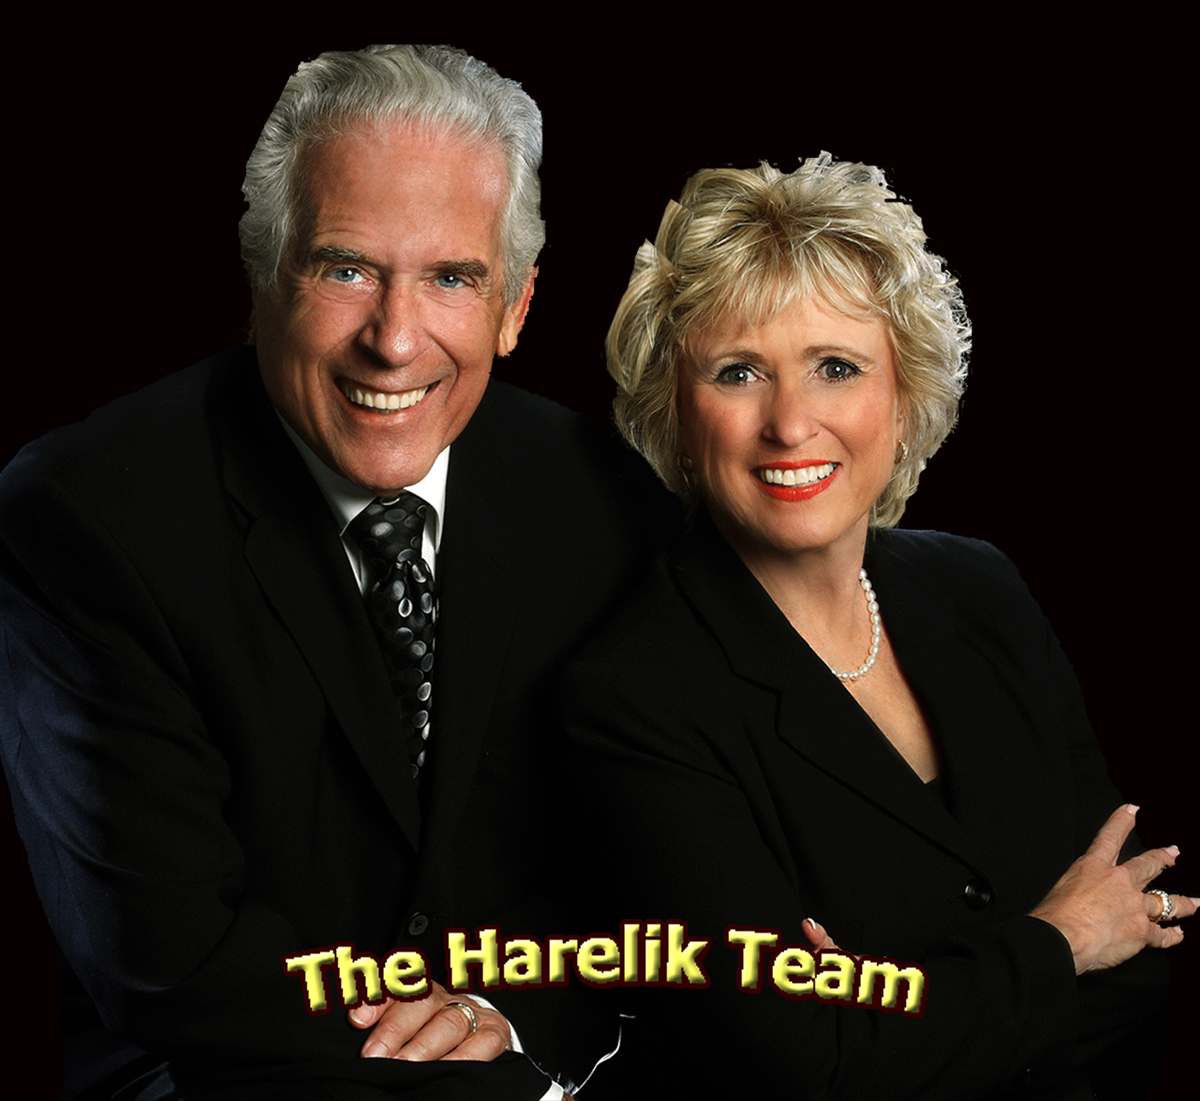 The Harelik Team